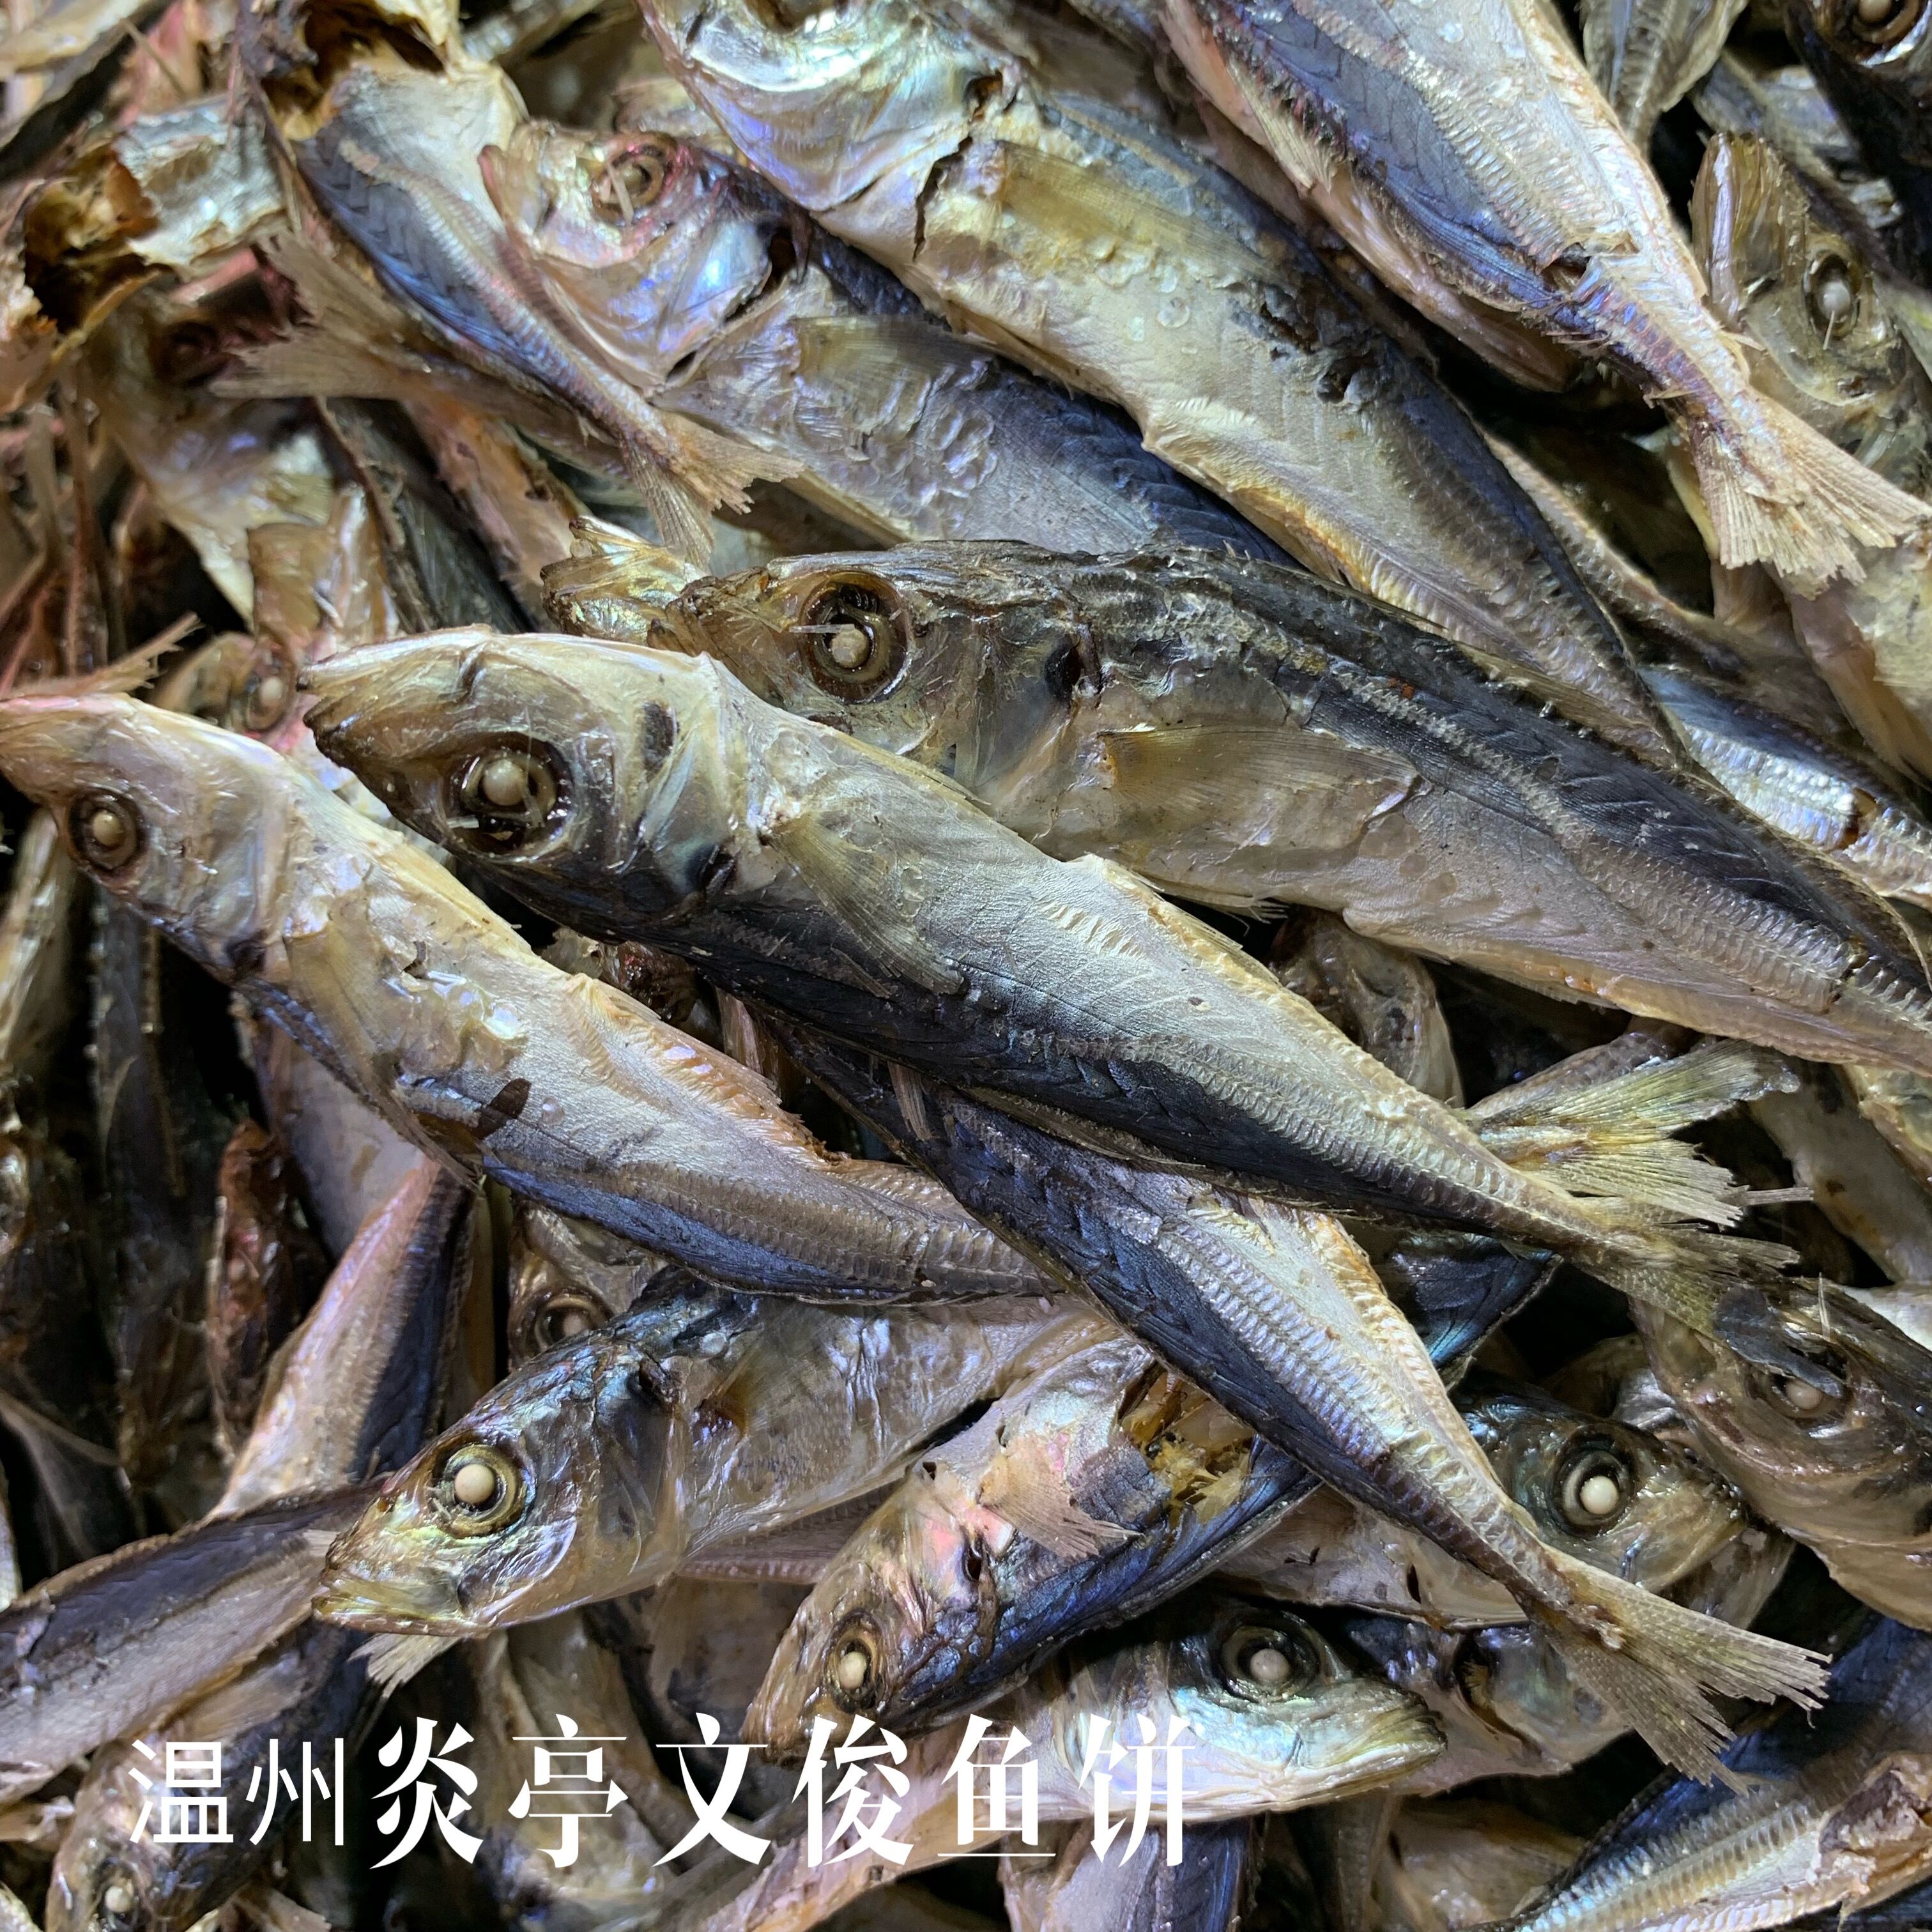 温州特产 海鲜干货 巴浪鱼小提鱼熟鱼干小鱼干炖豆腐即食鱼干500g